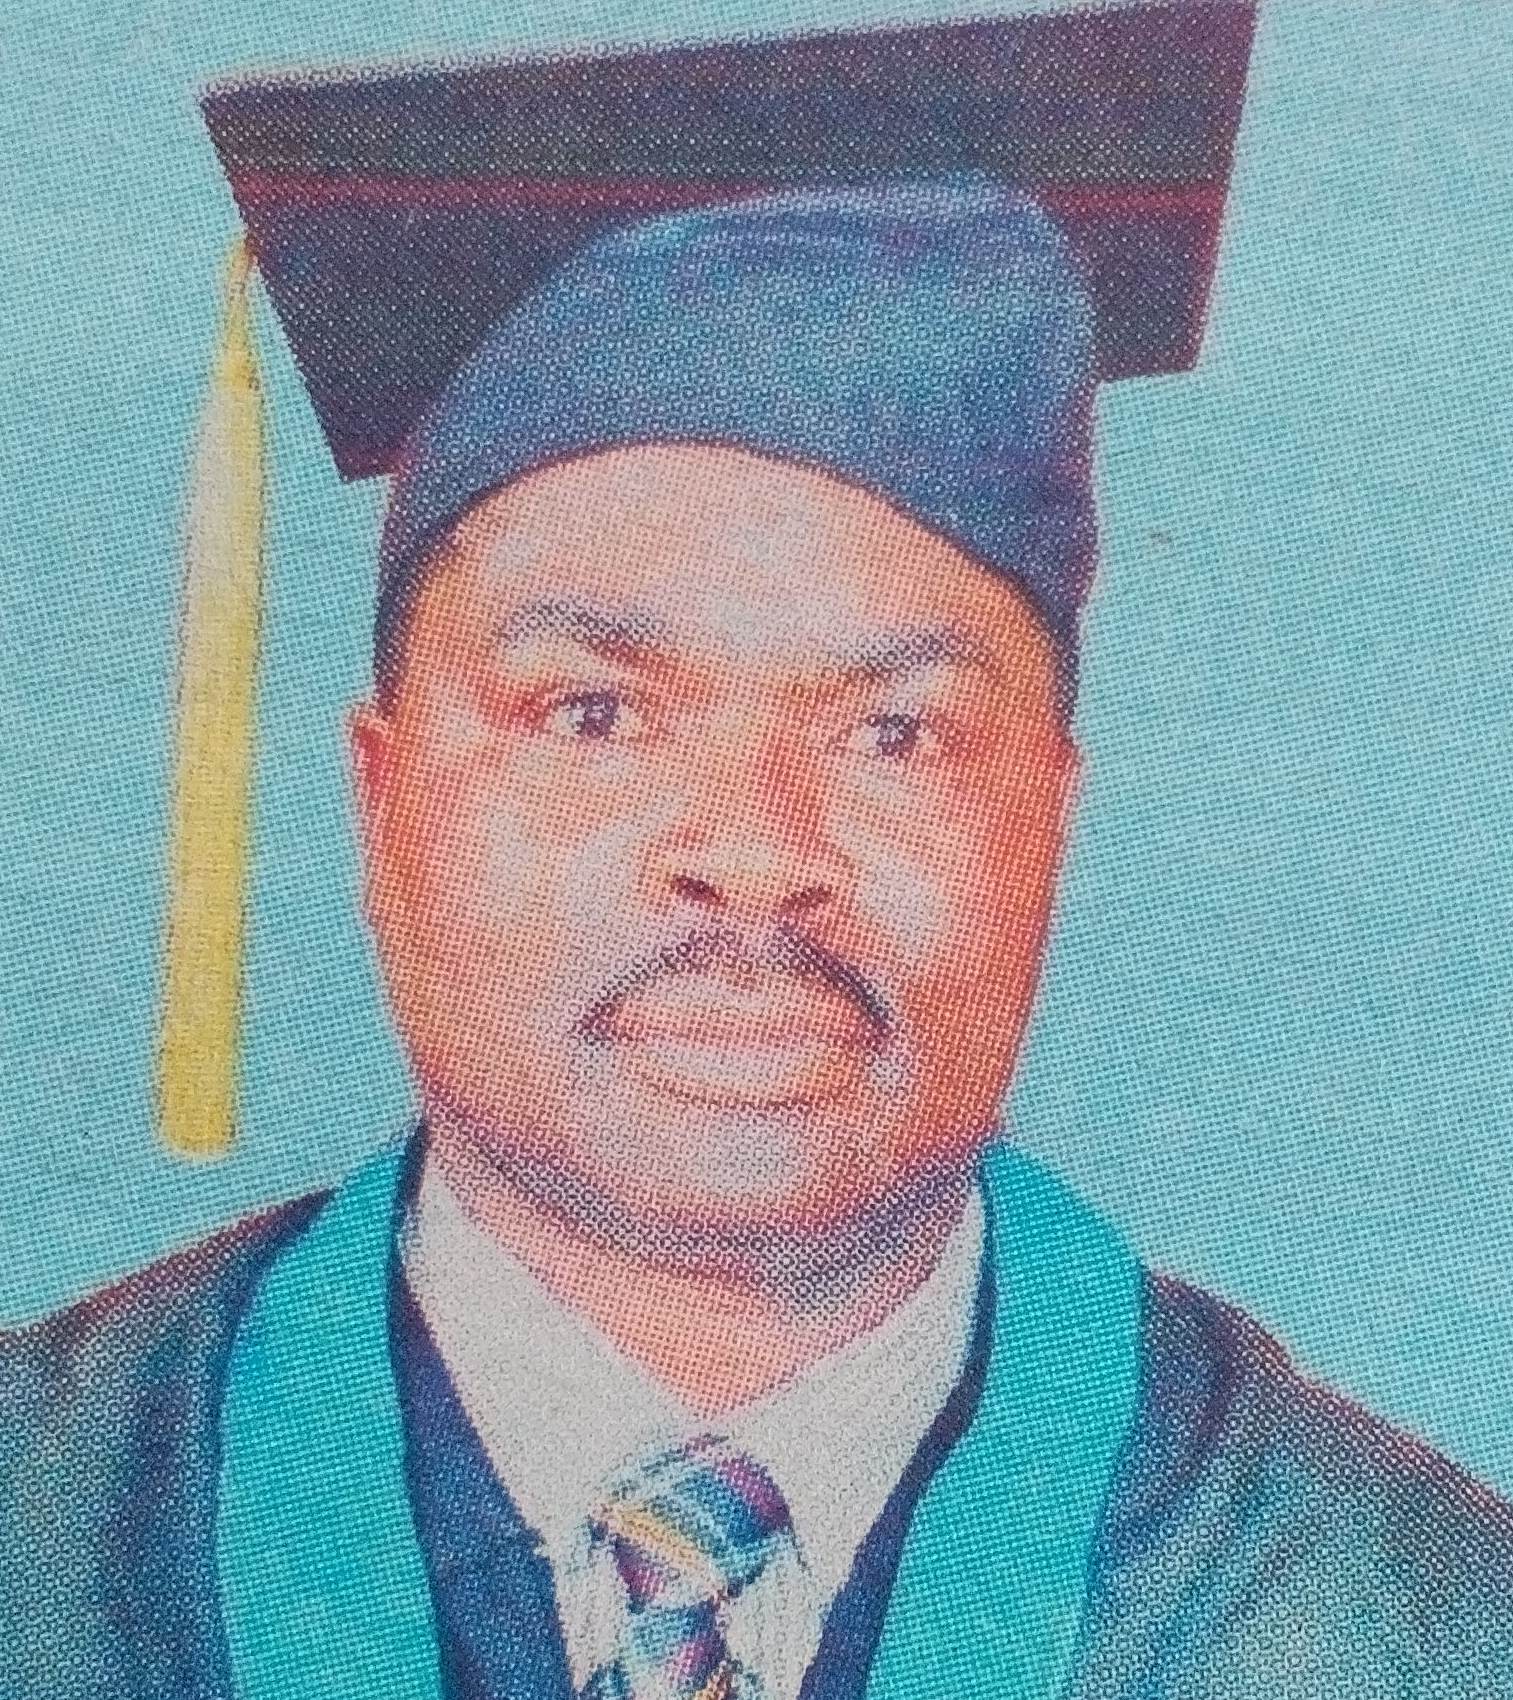 Obituary Image of Phares Kimathi Ngahu